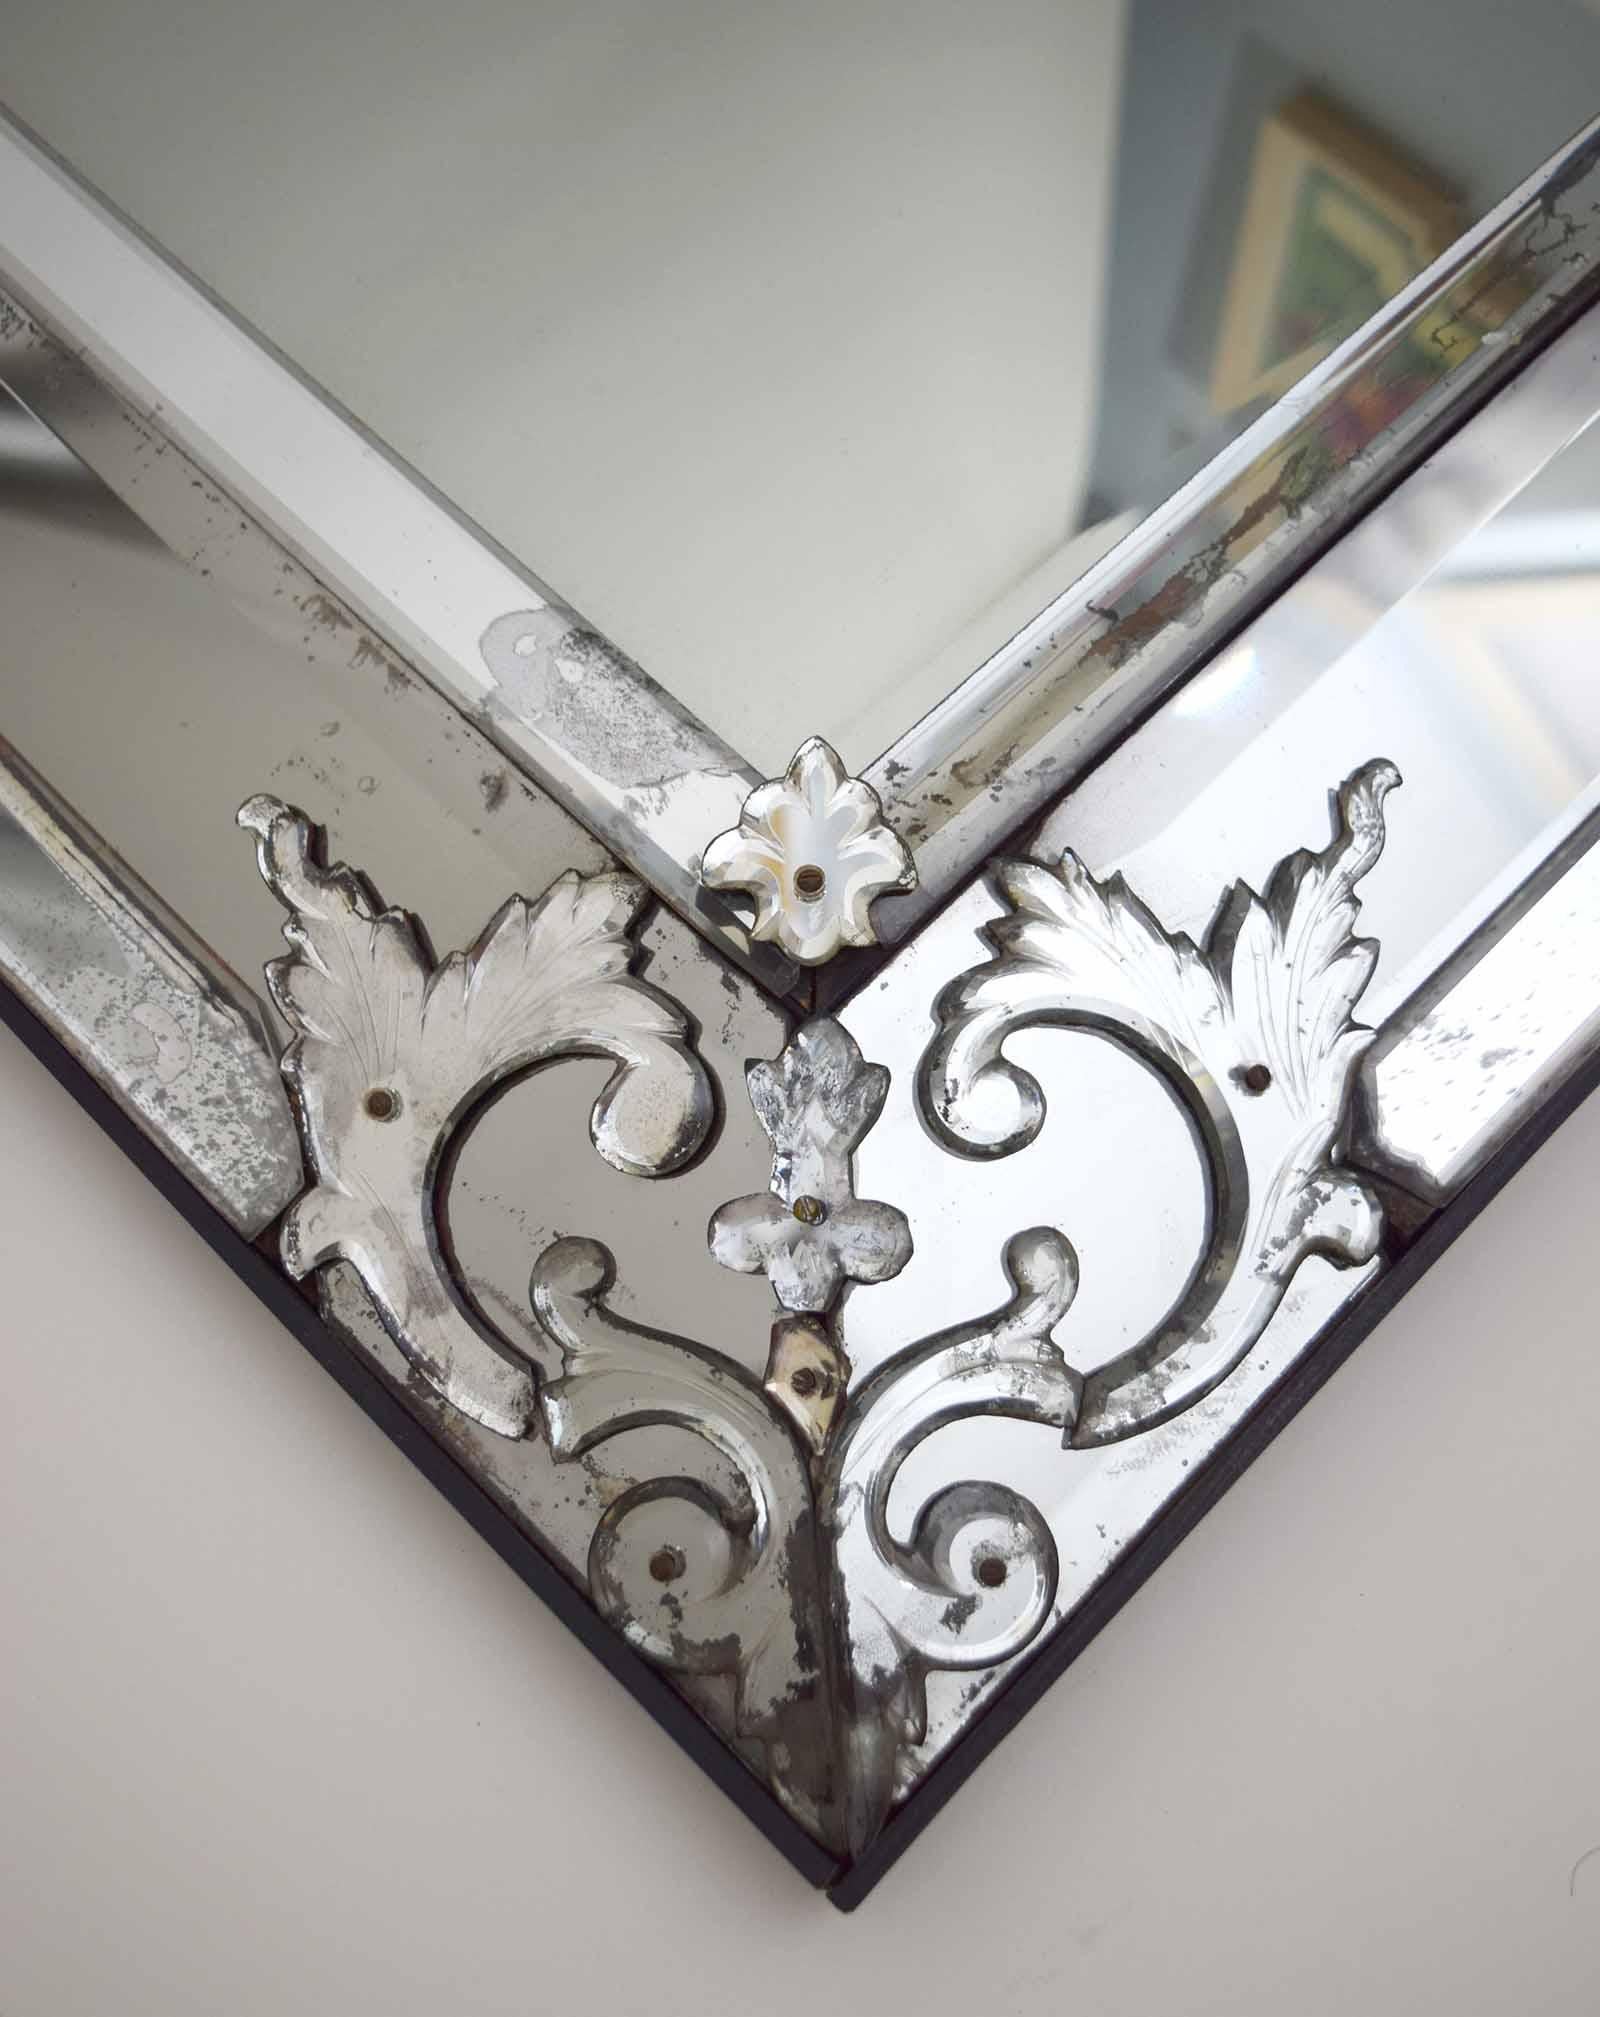 Dieser Spiegel aus Quecksilberglas wurde im 19. Jahrhundert in Italien hergestellt und hat eine gräuliche Färbung, die ihm einen geheimnisvollen Charakter verleiht. Stilistisch knüpft er an die Spiegelrahmen des 17. Jahrhunderts an, die in den